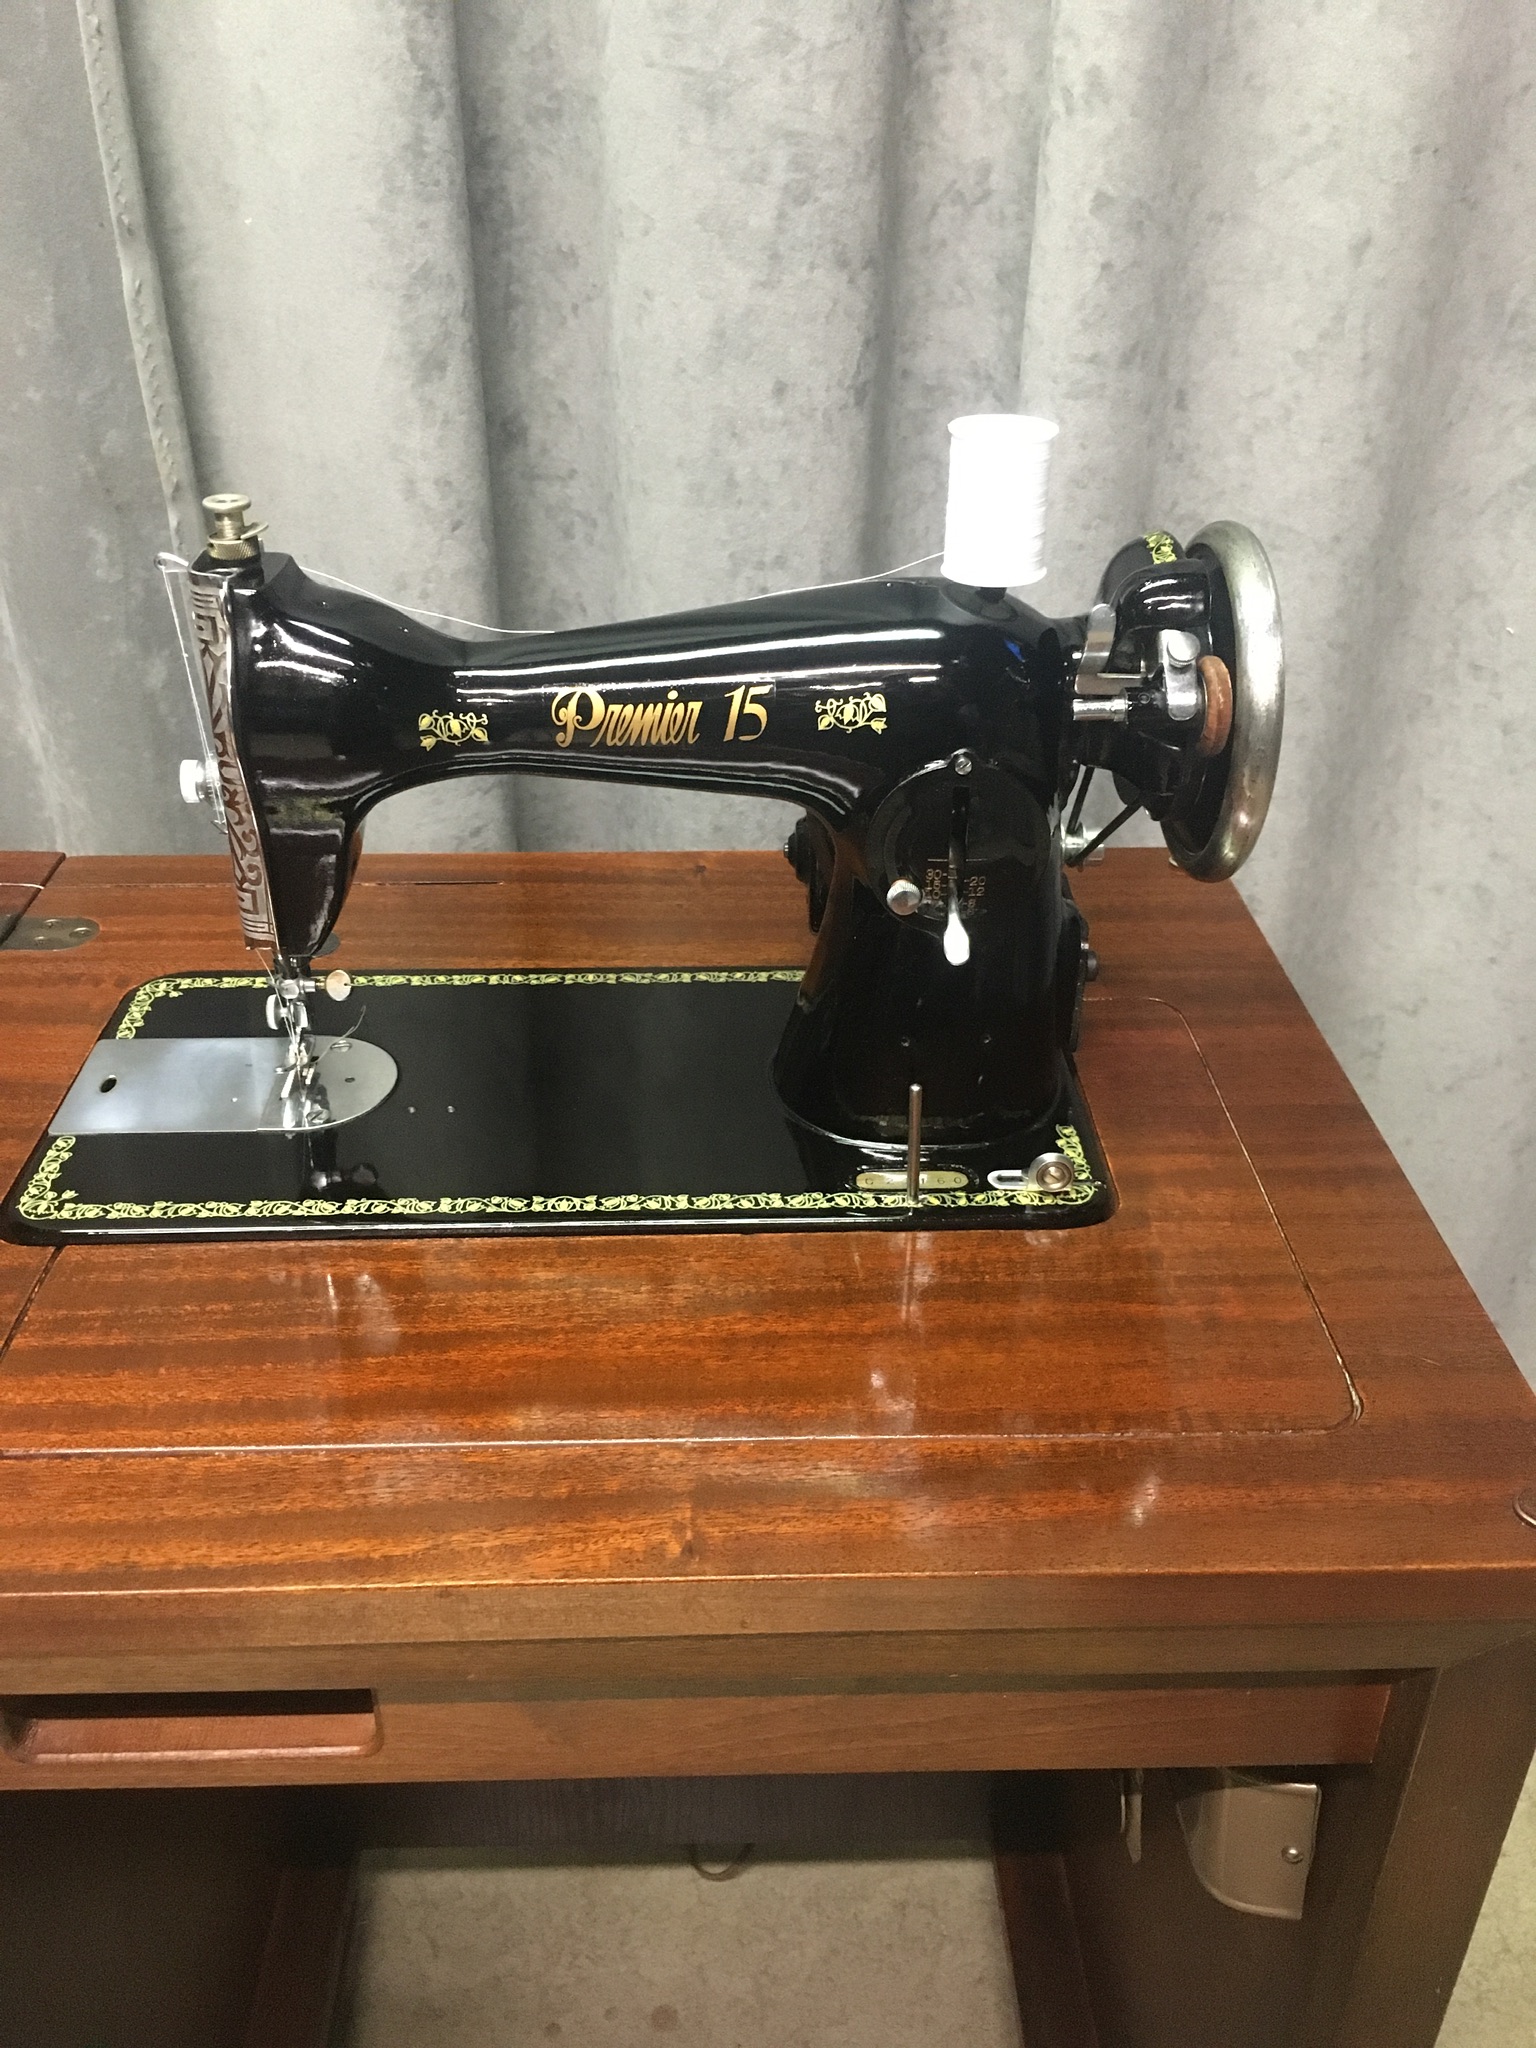 singer manuals sewing machine